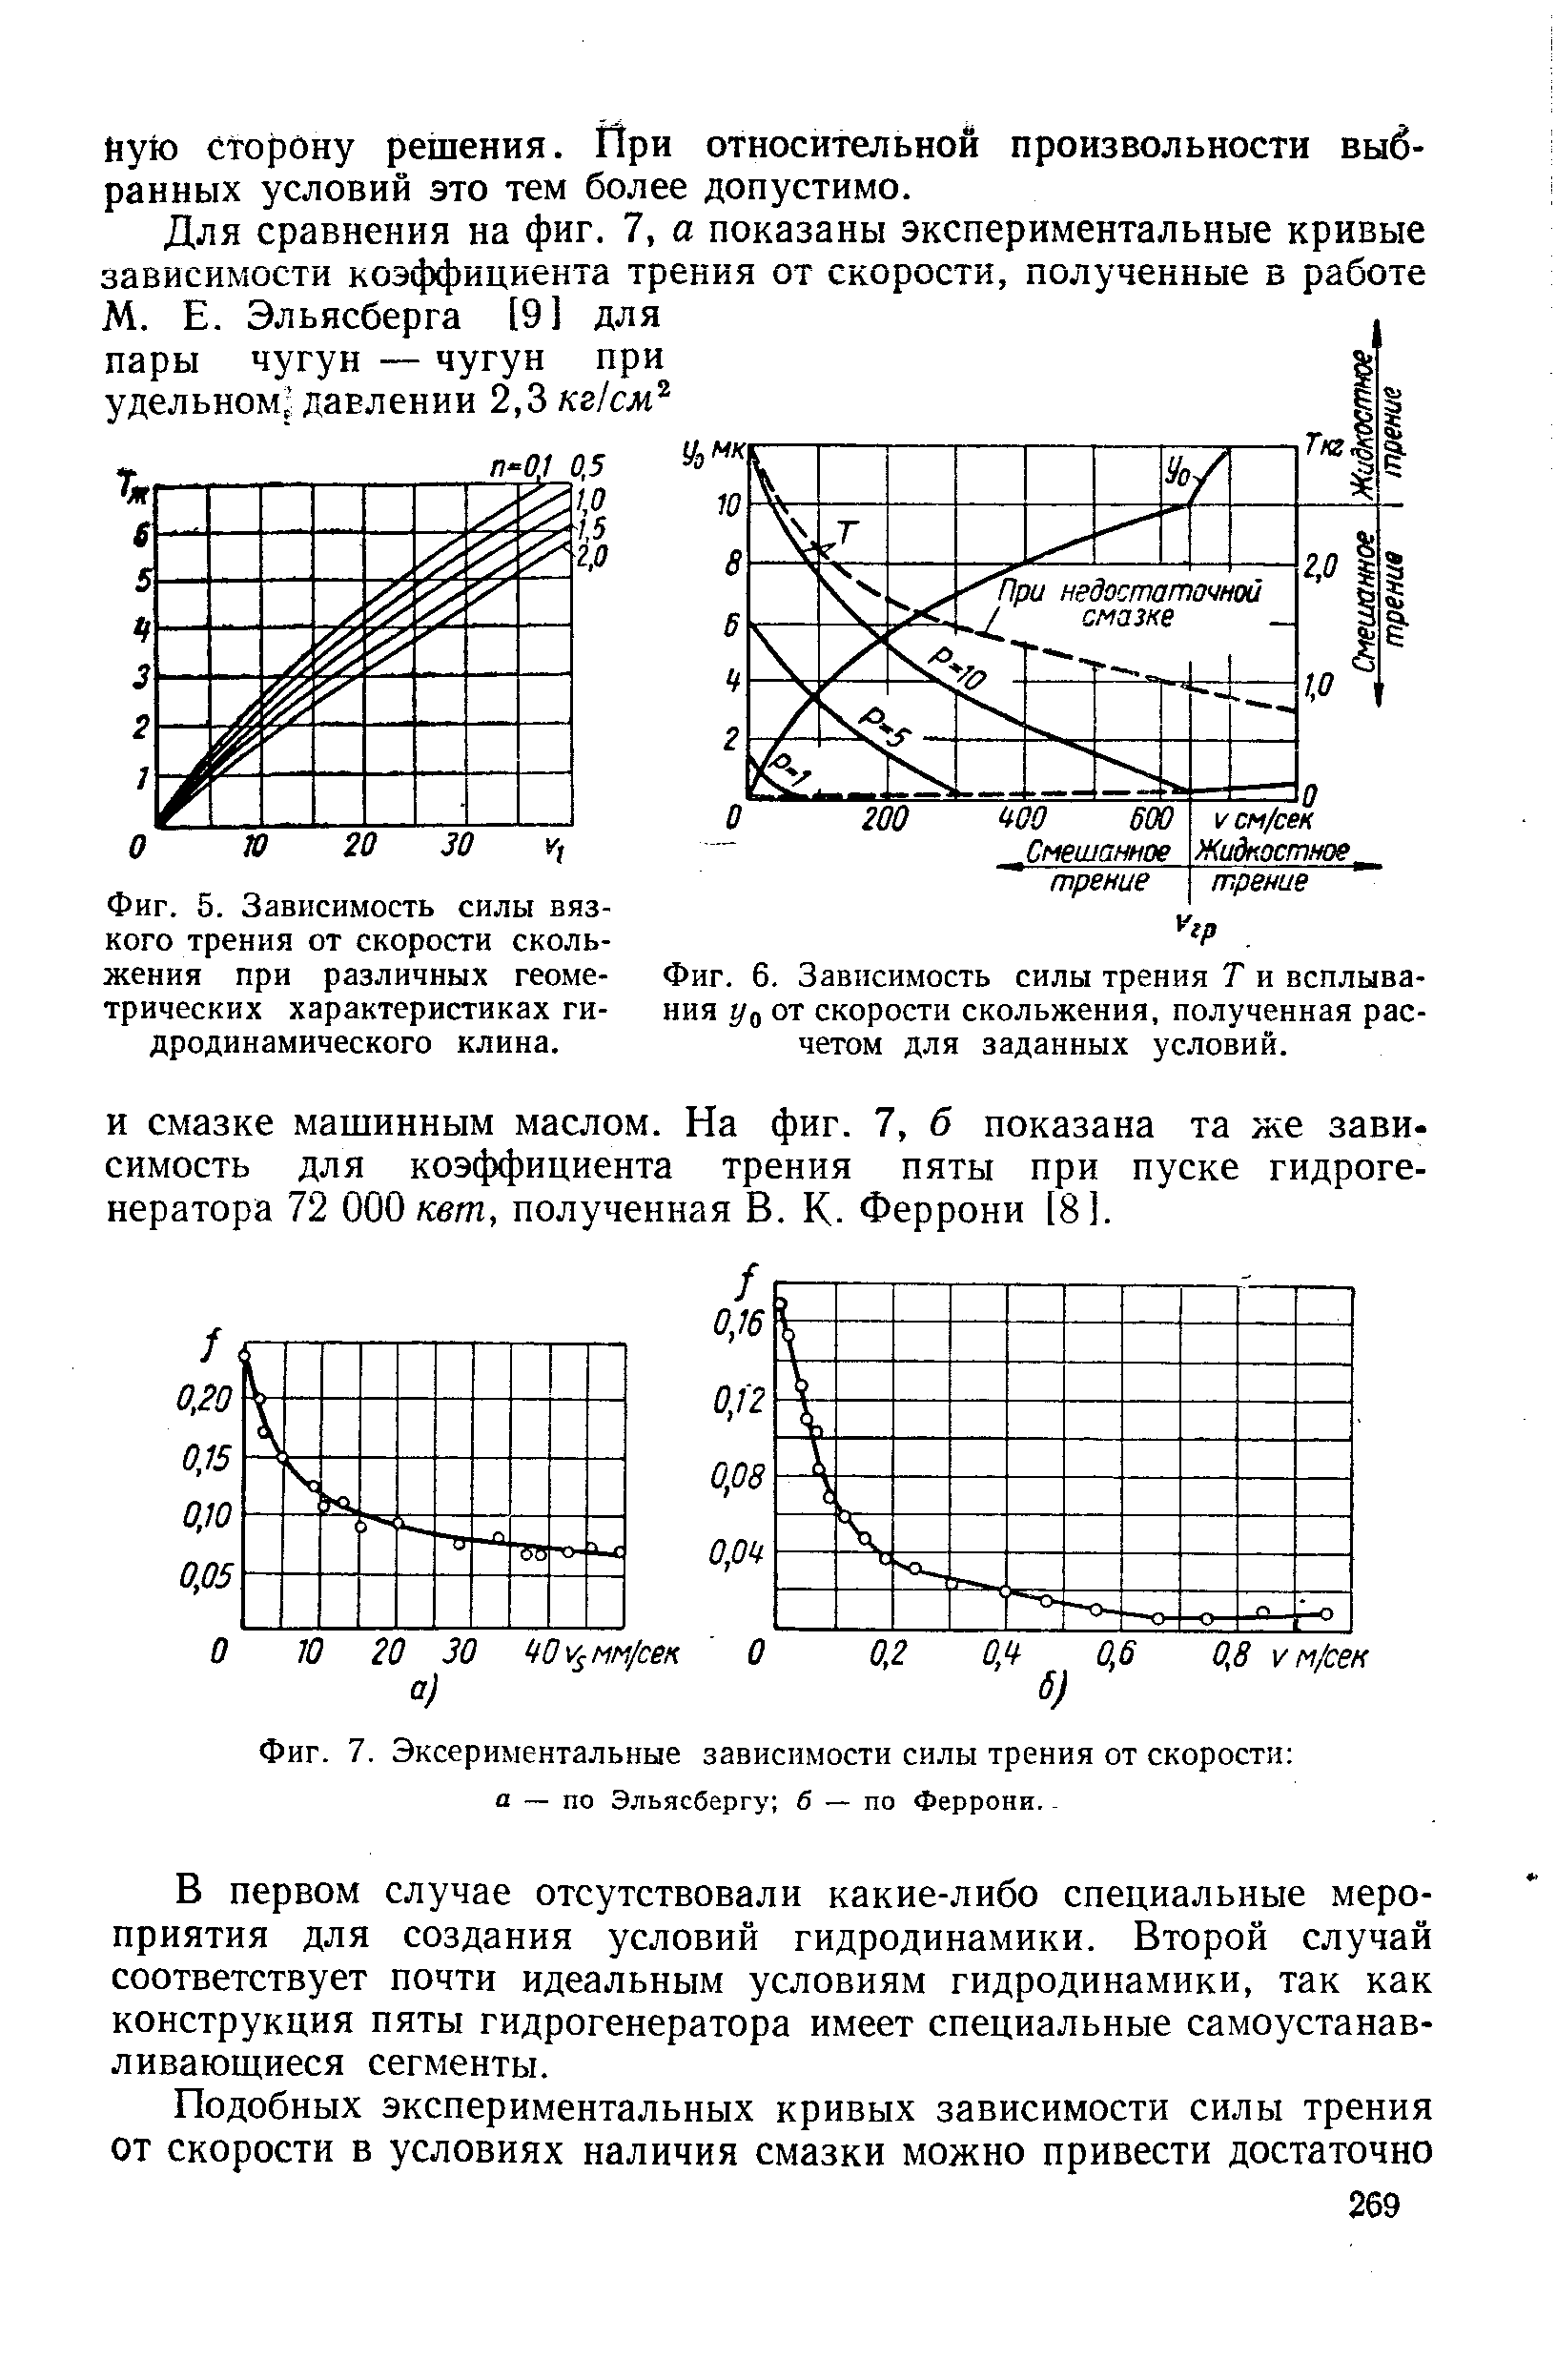 Фиг. 5. Зависимость <a href="/info/13047">силы вязкого трения</a> от <a href="/info/2003">скорости скольжения</a> при различных геометрических характеристиках гидродинамического клина.
